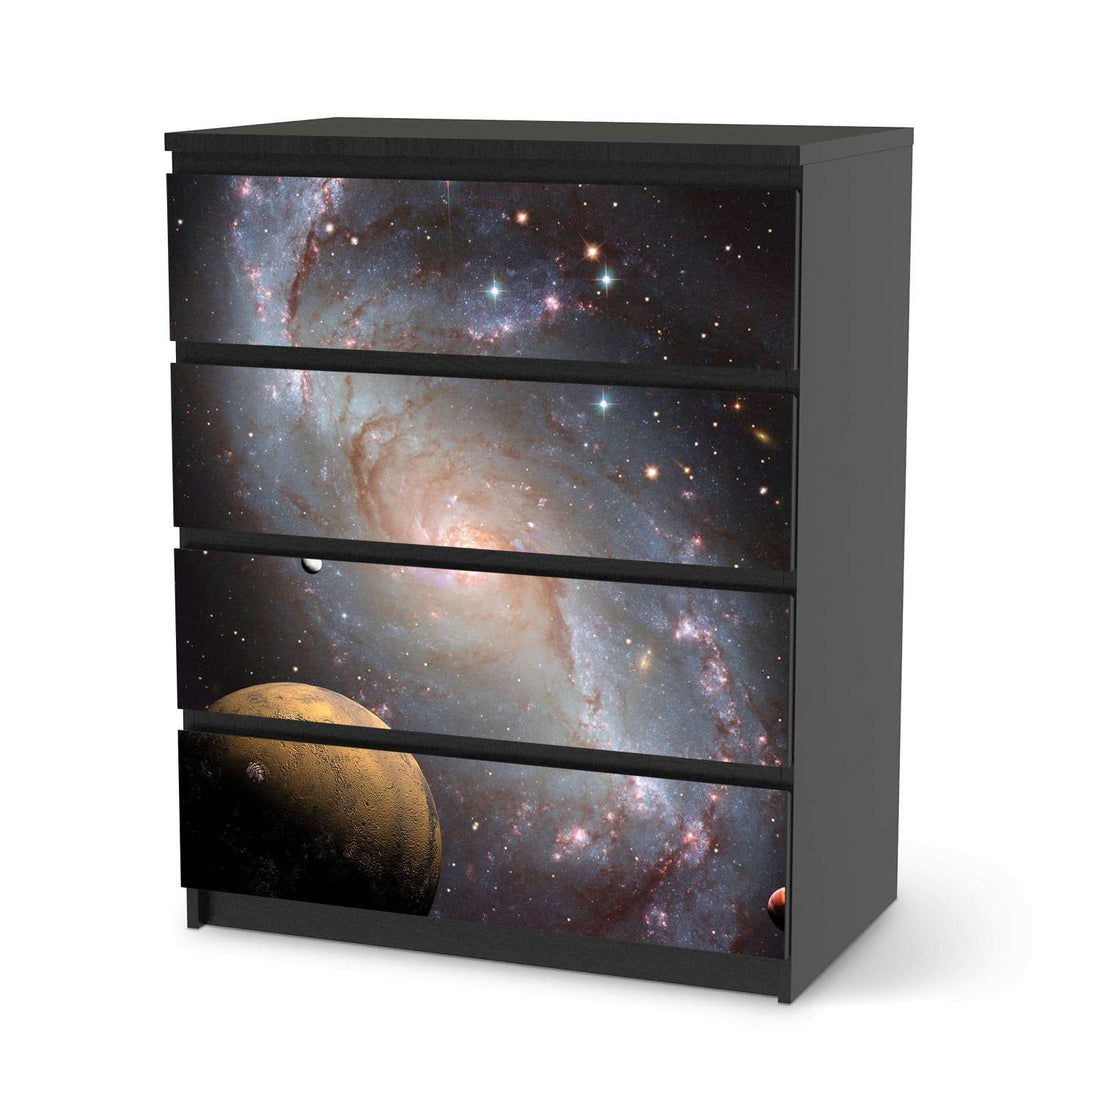 Folie für Möbel Milky Way - IKEA Malm Kommode 4 Schubladen - schwarz